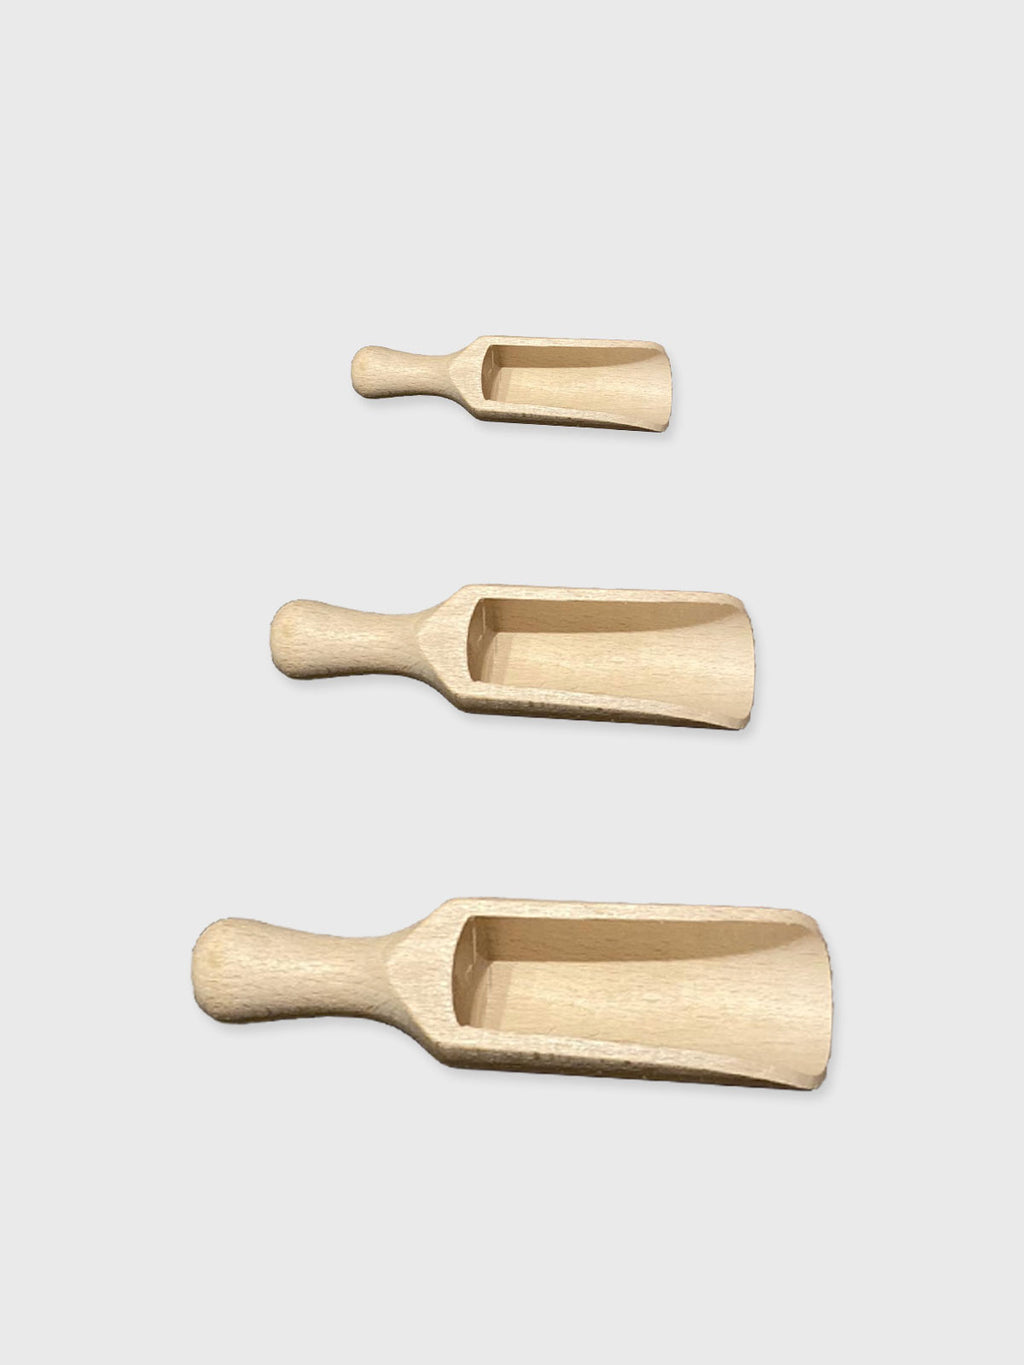 Wooden Scoop - 3 Sizes